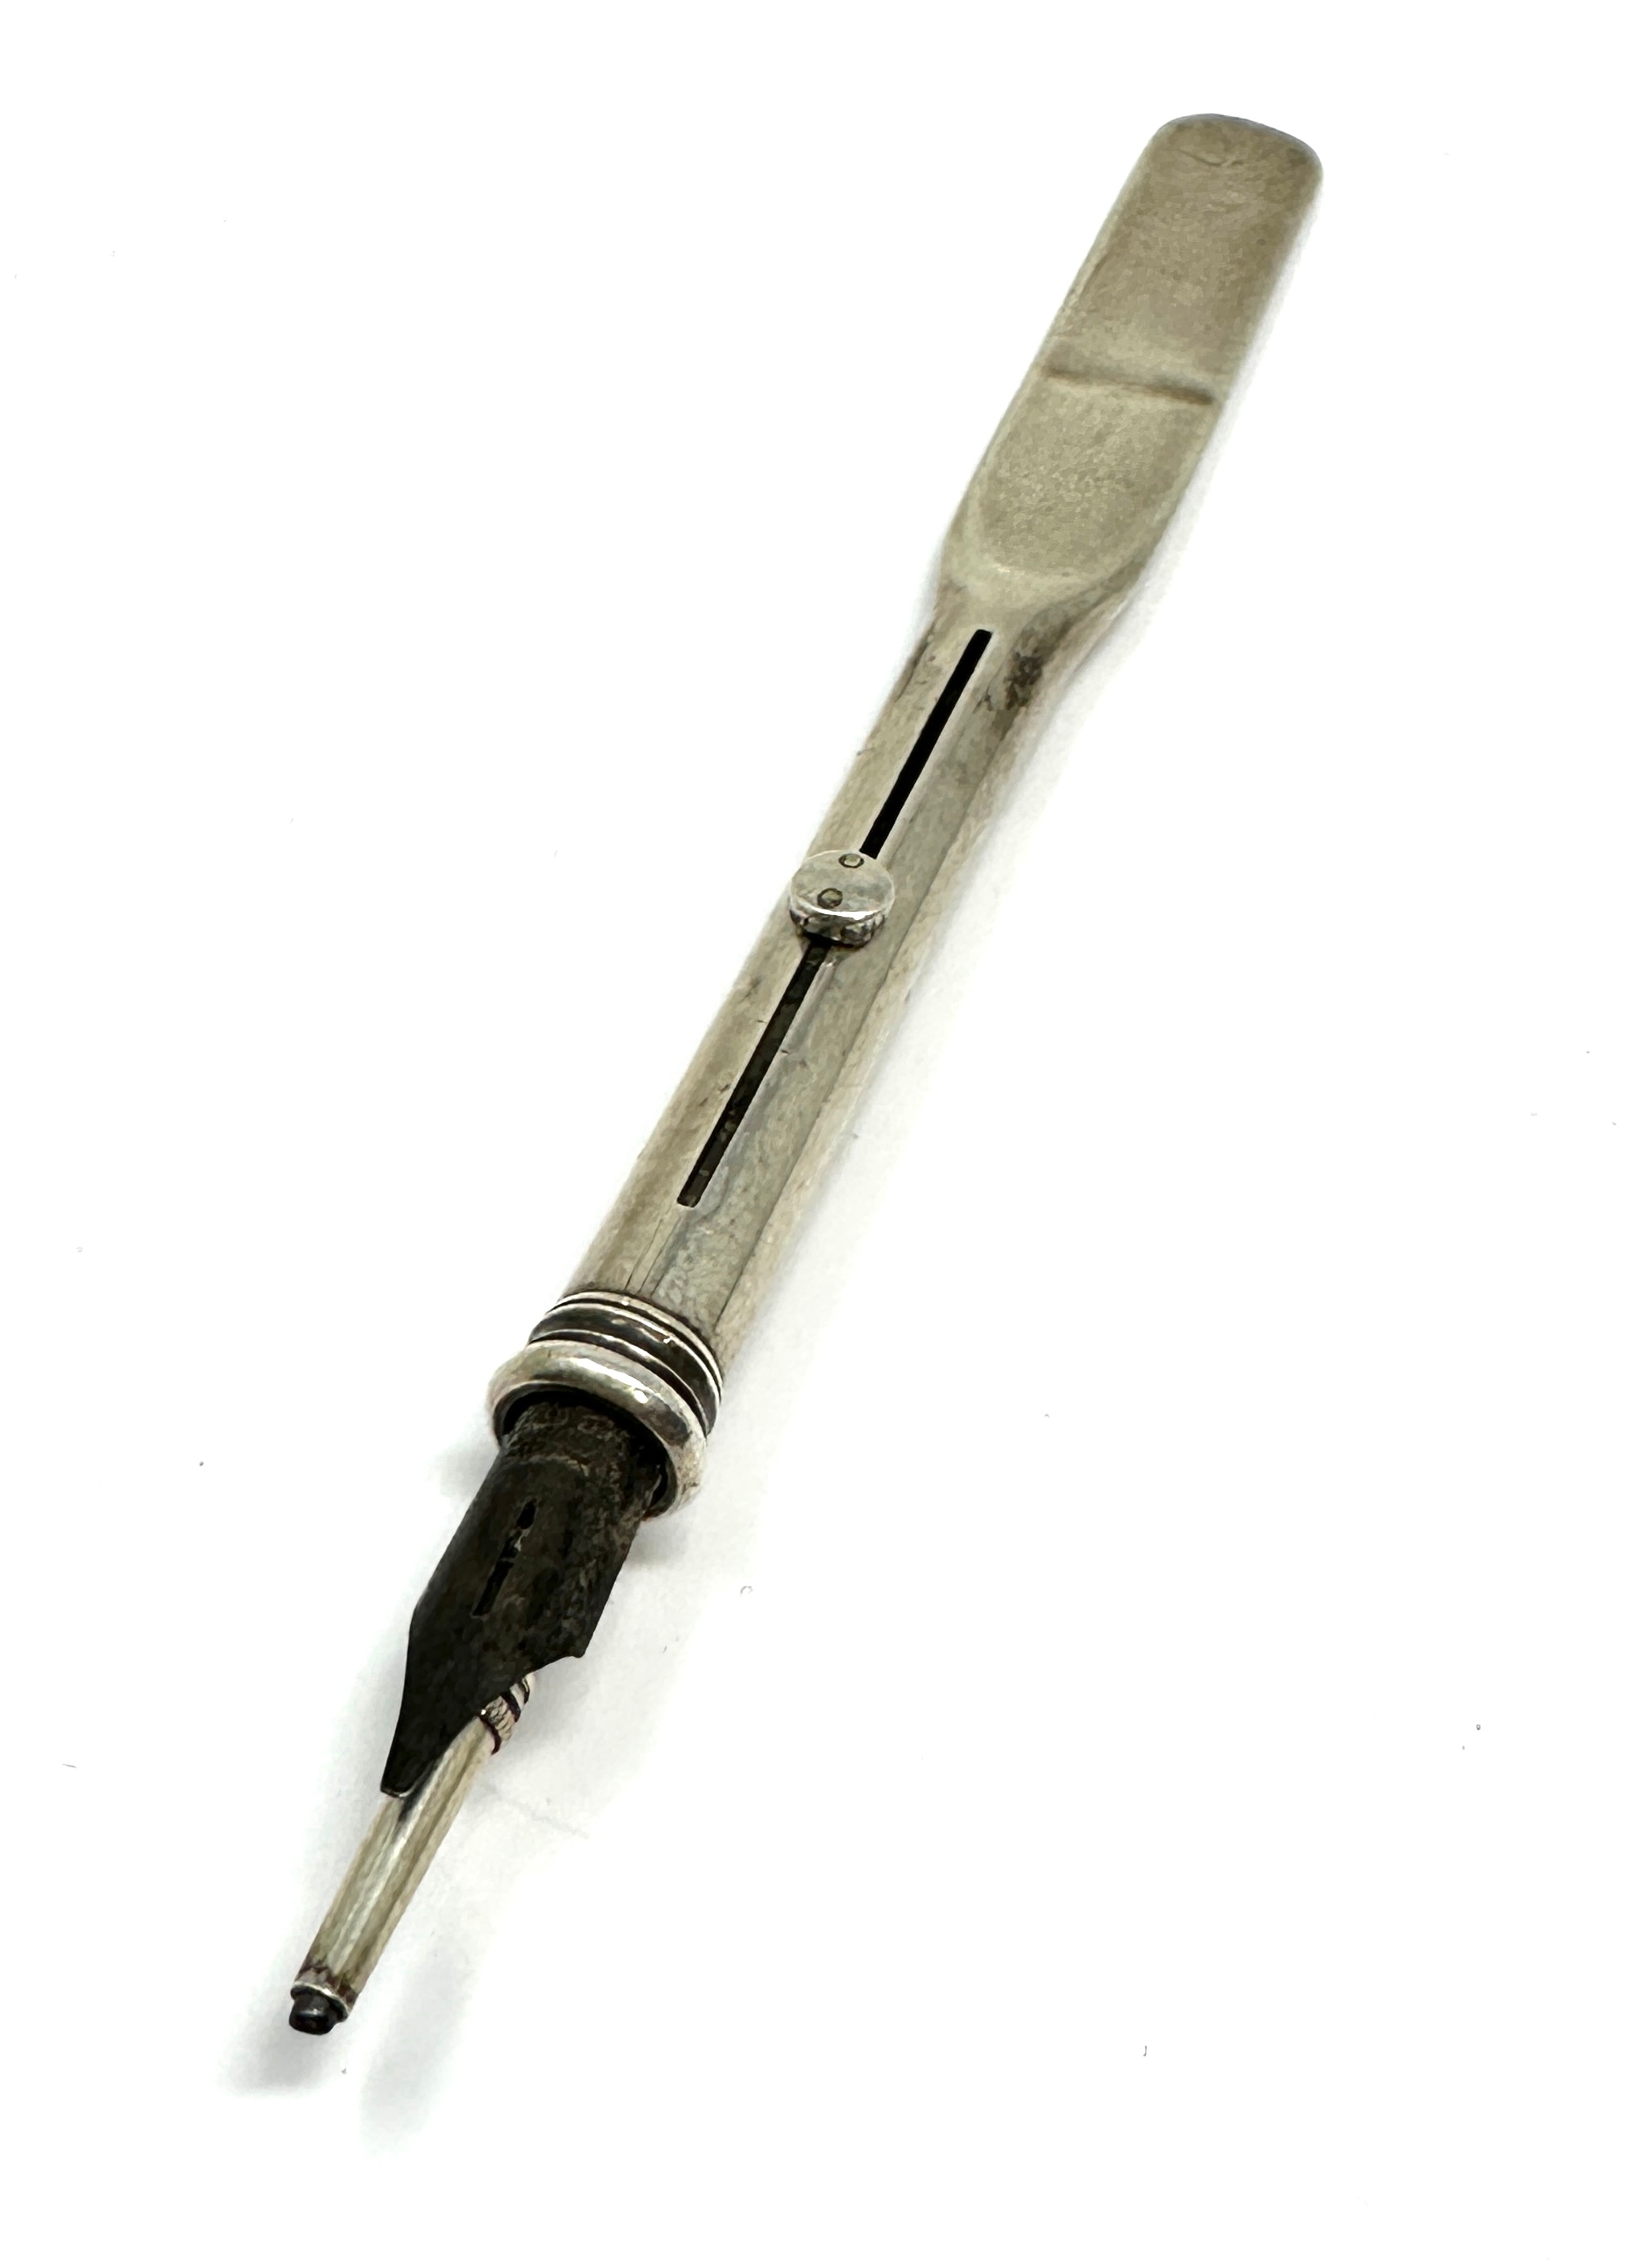 Antique silver sampson Morden expanding pencil & nib pen - Image 3 of 4